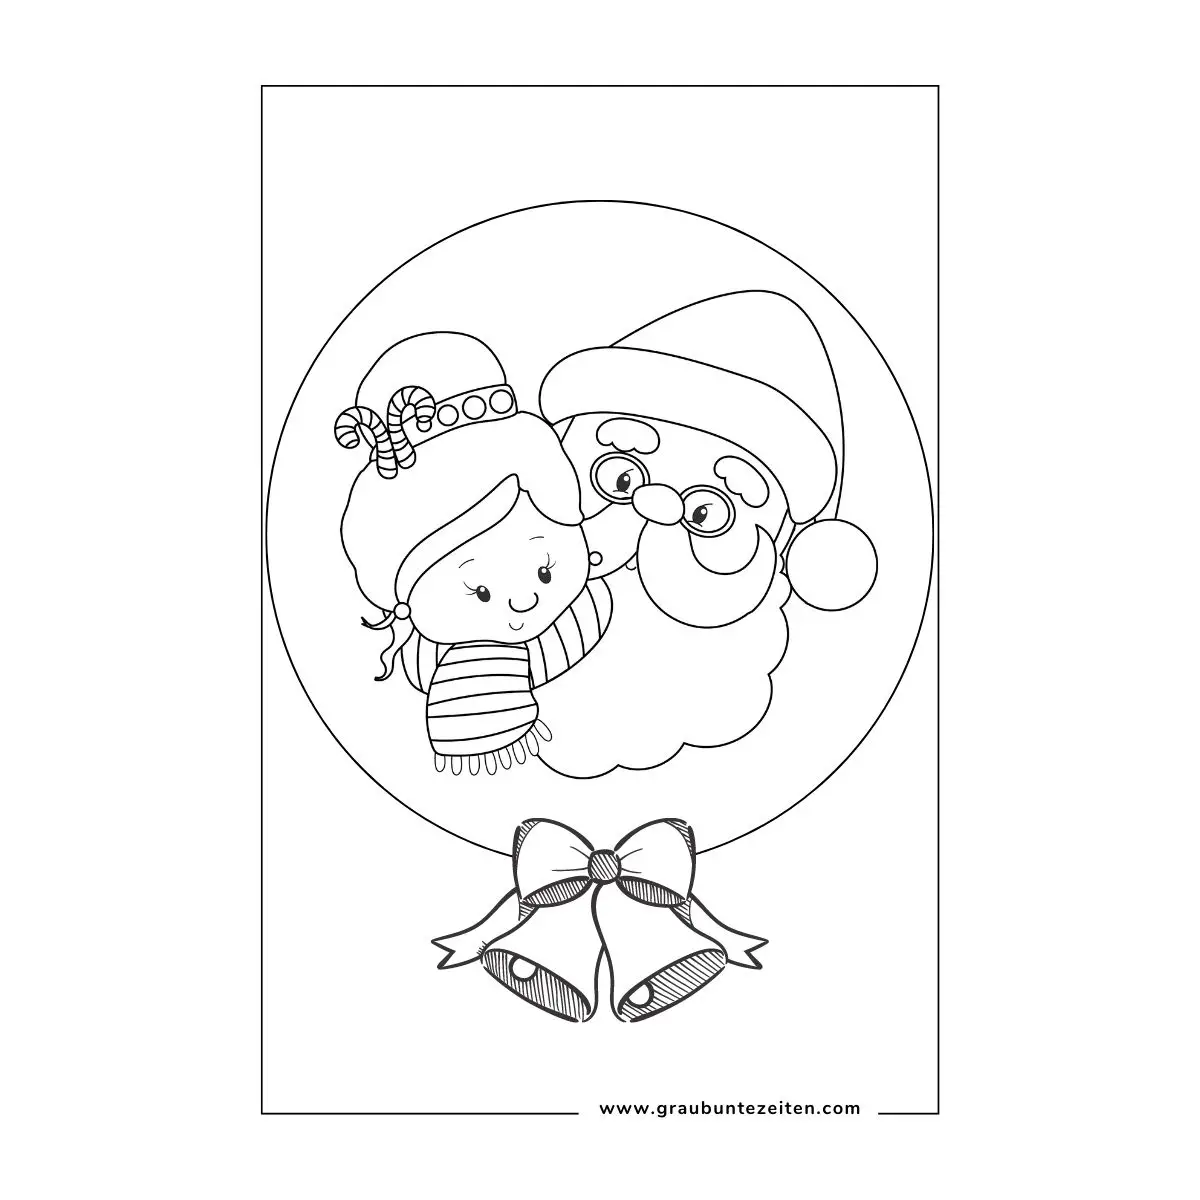 Ausmalbilder Weihnachten kostenlos drucken. In einem Kreis der Weihnachtsmann und ein kleines Mädchen. Unter dem Kreis sind zwei Glocken mit einer Schleife.